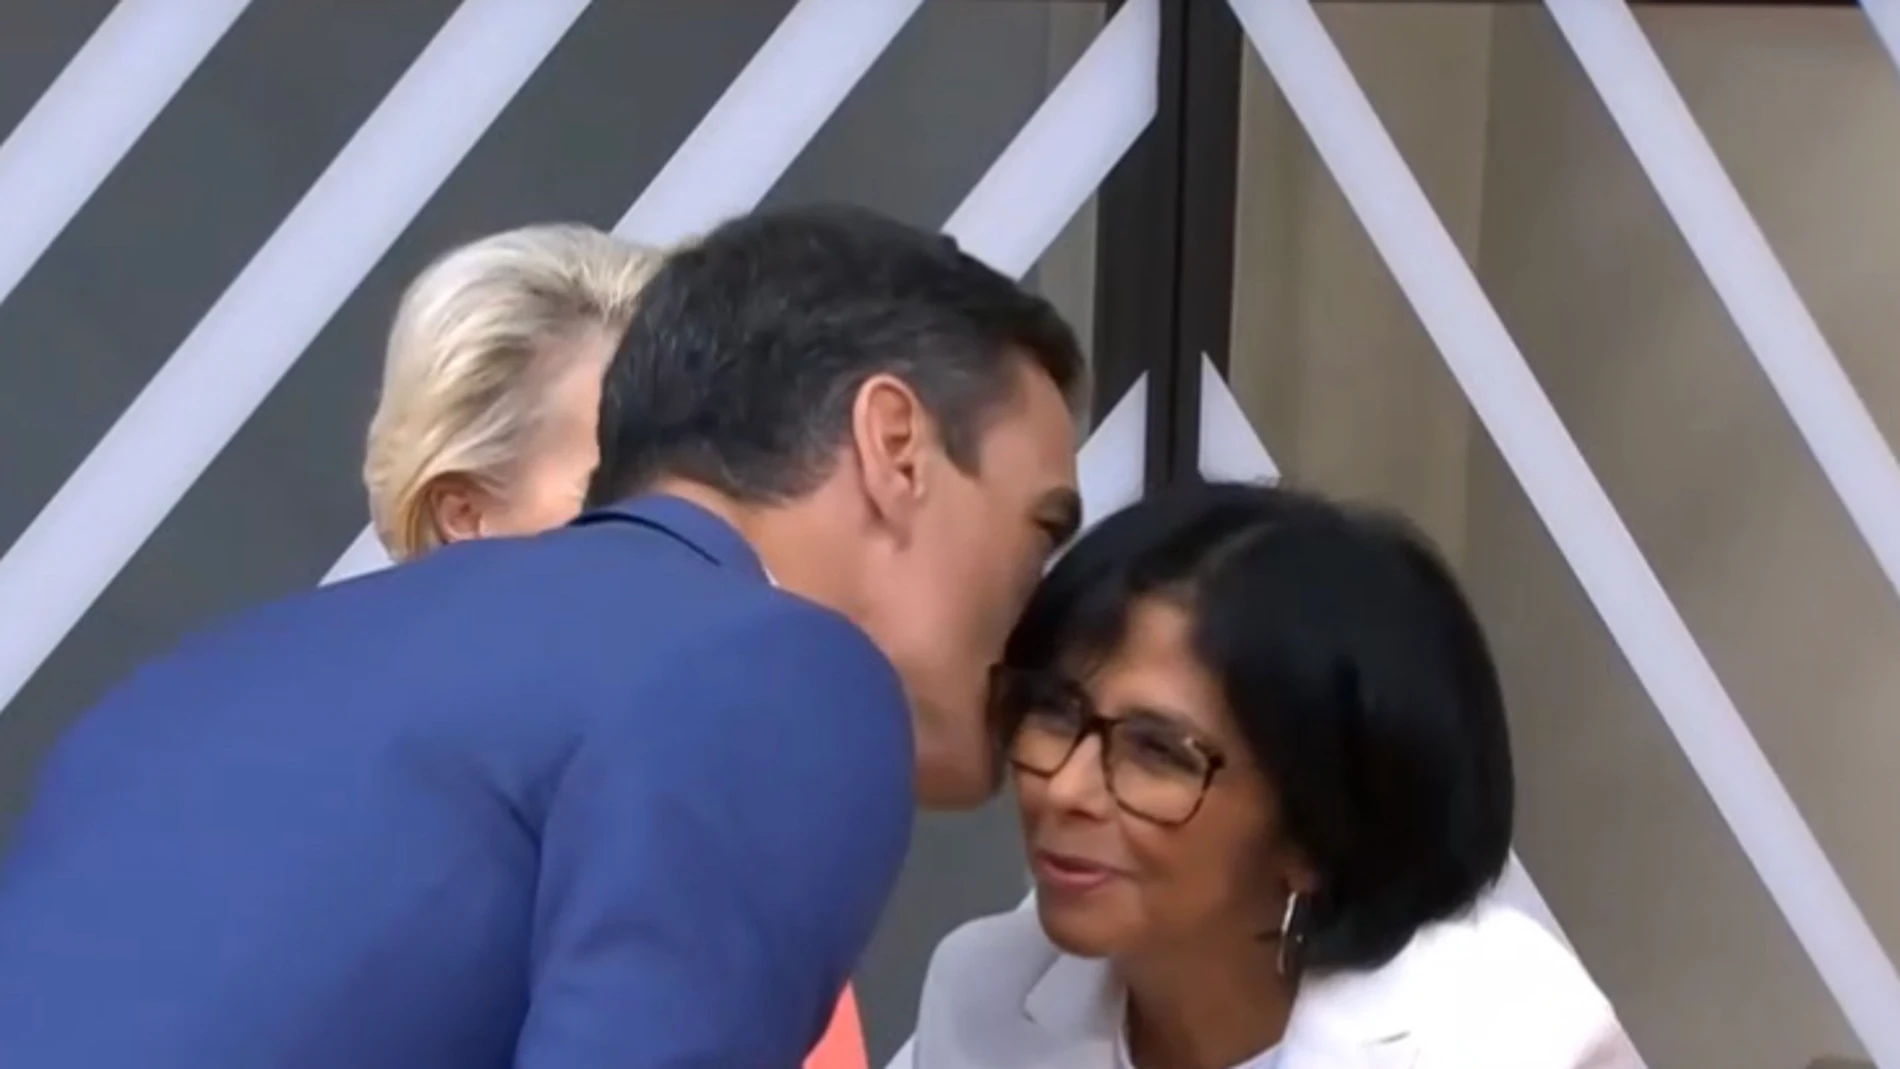 El presidente se muestra efusivo con la dirigente venezolana y añade al apretón de manos este cariñoso gesto